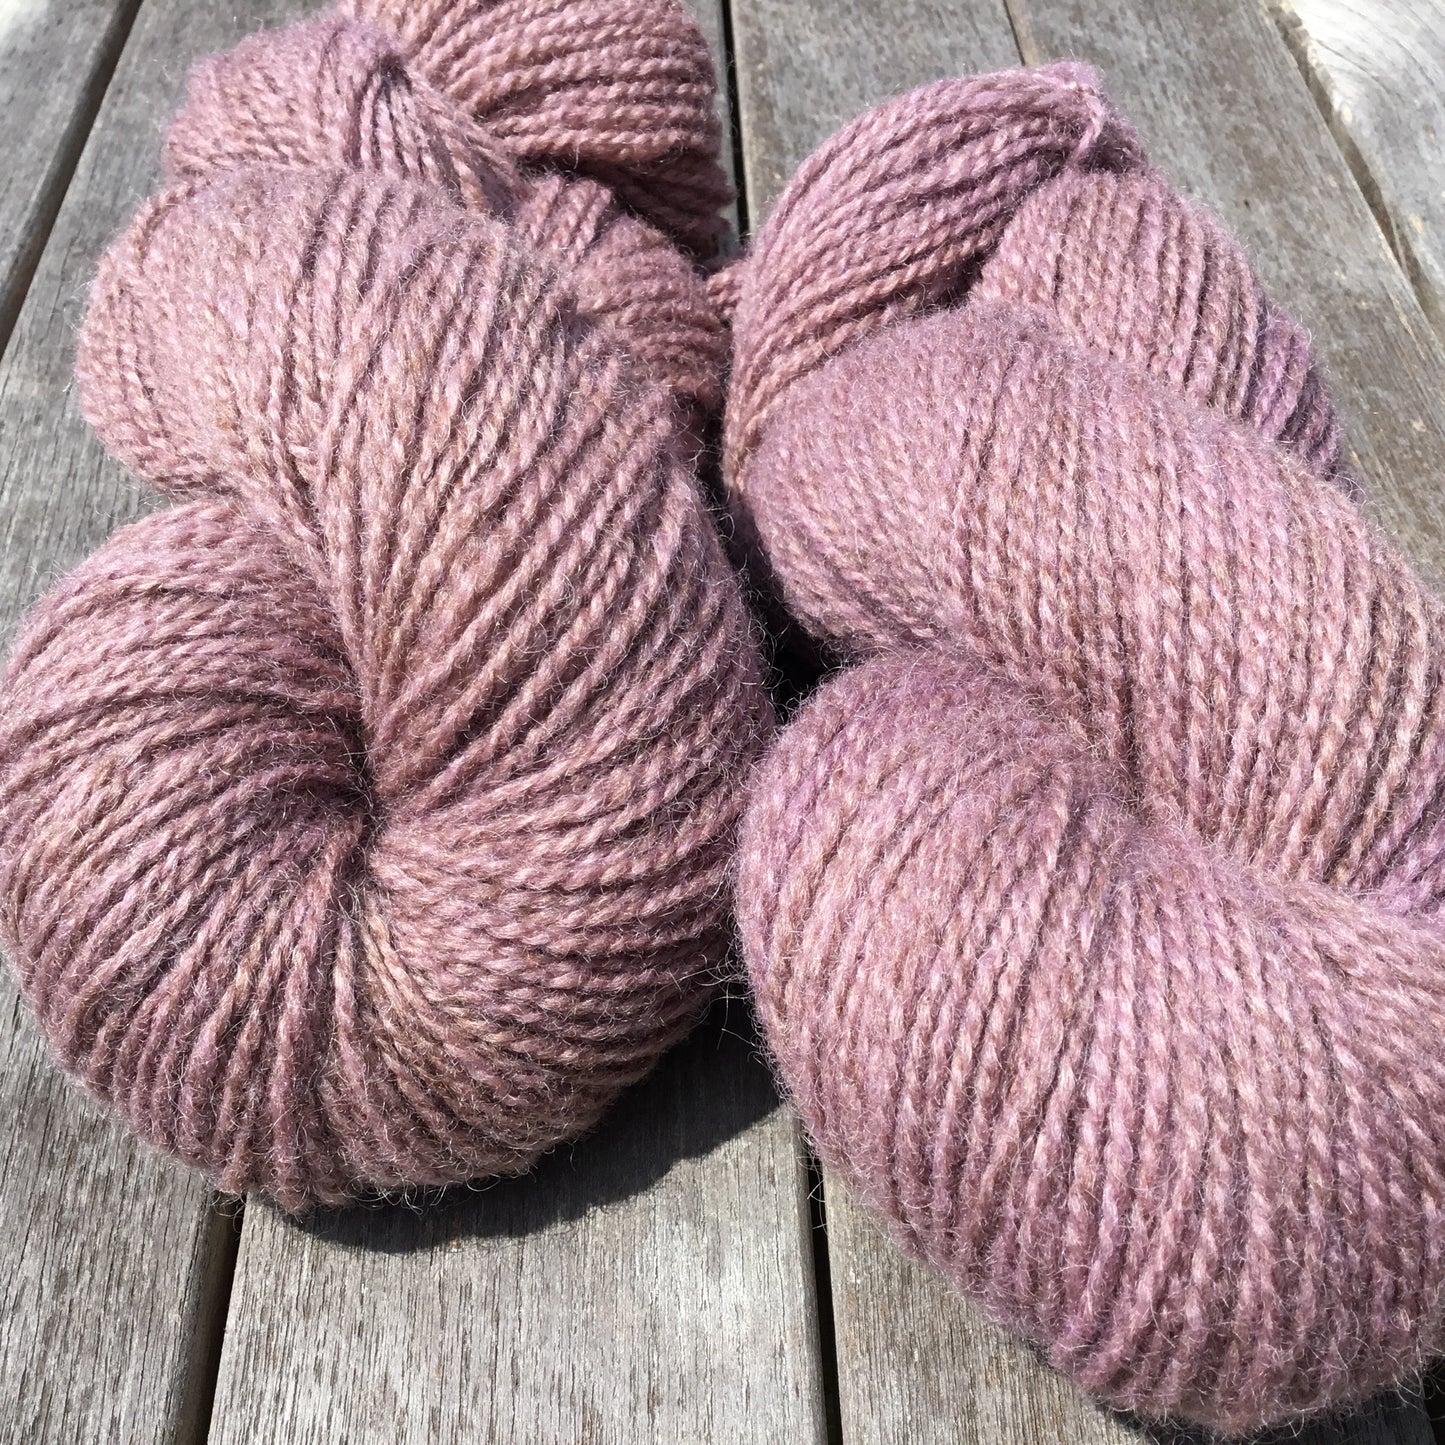 Dusty Purple- Worsted Wool Yarn (40 Merino 60 Romney) 2 ply - 4 oz skeins